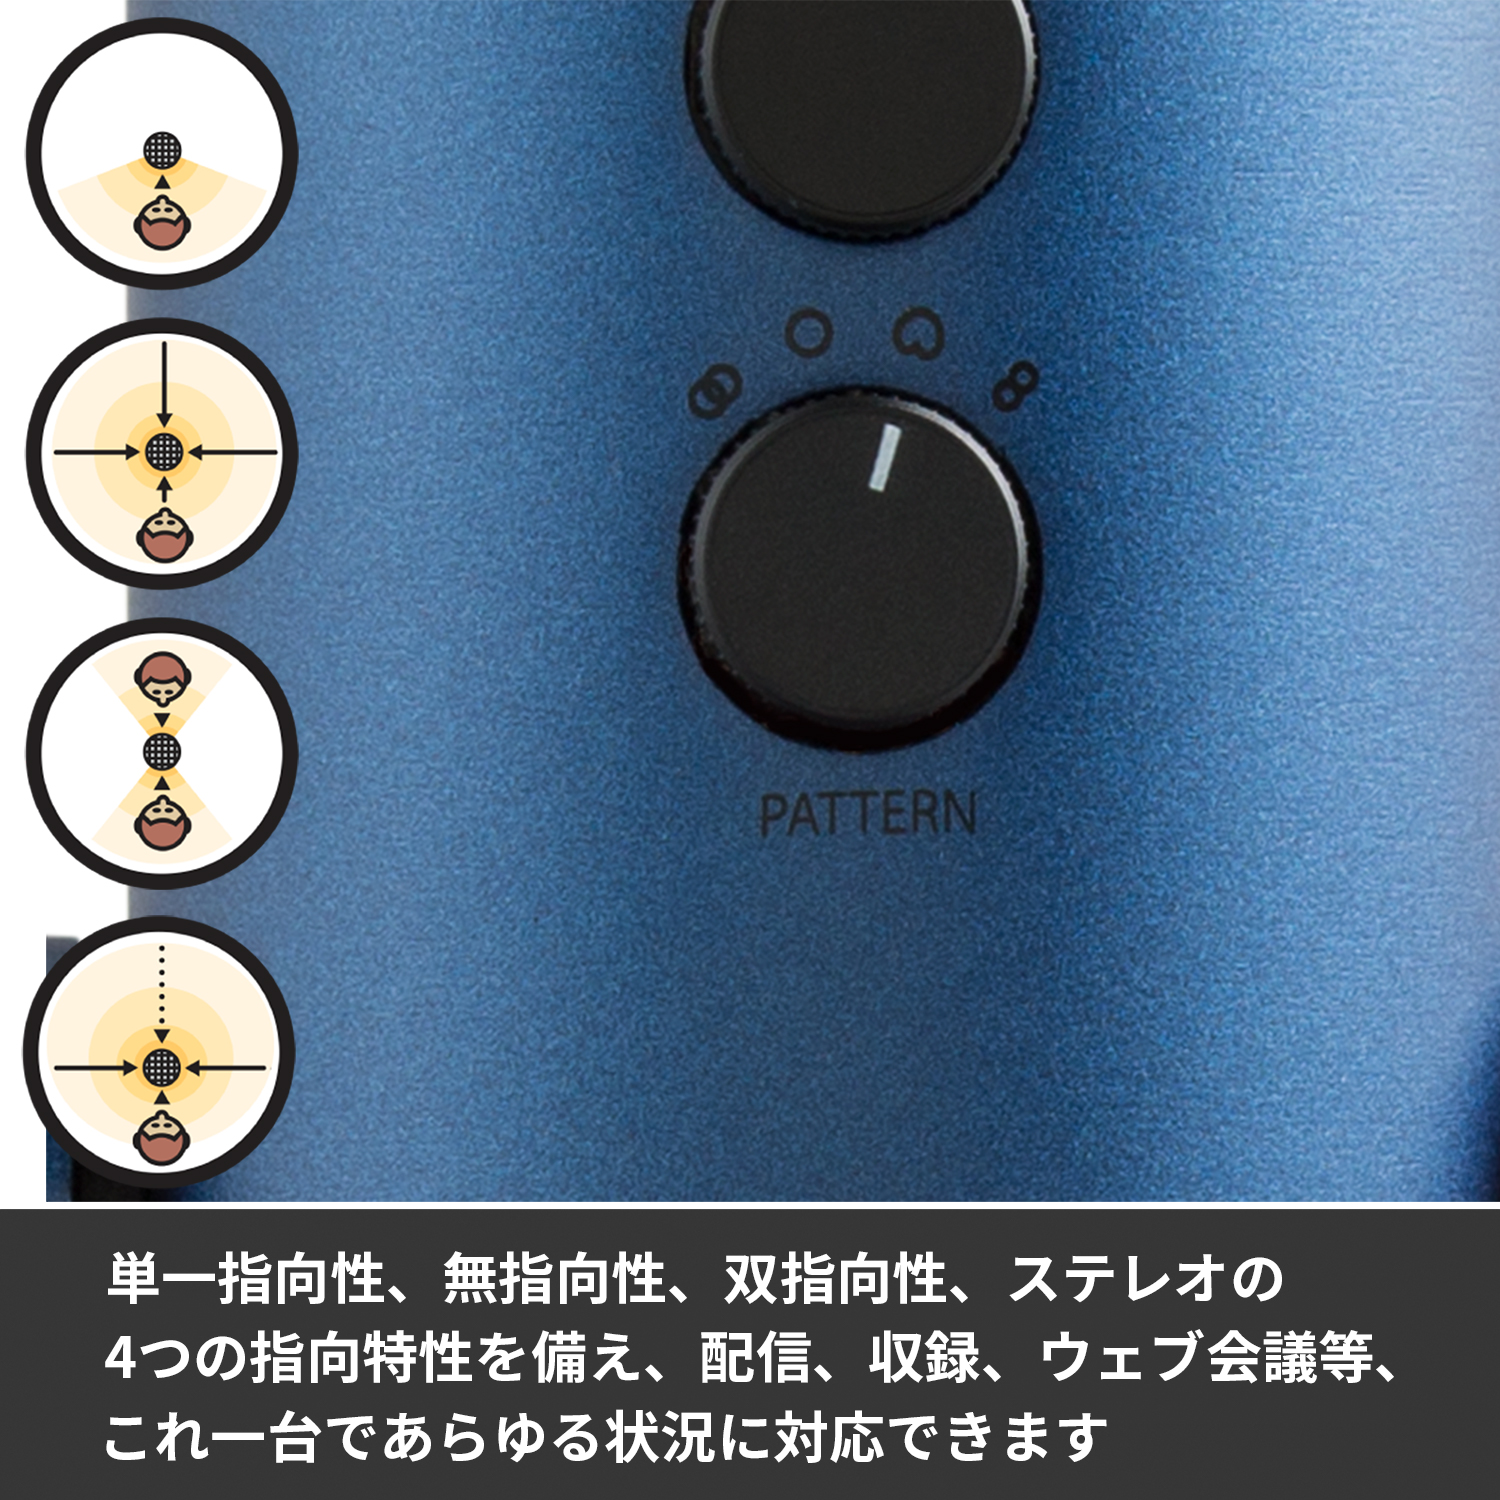 Blue Yeti USB コンデンサー マイク イエティ シルバー-